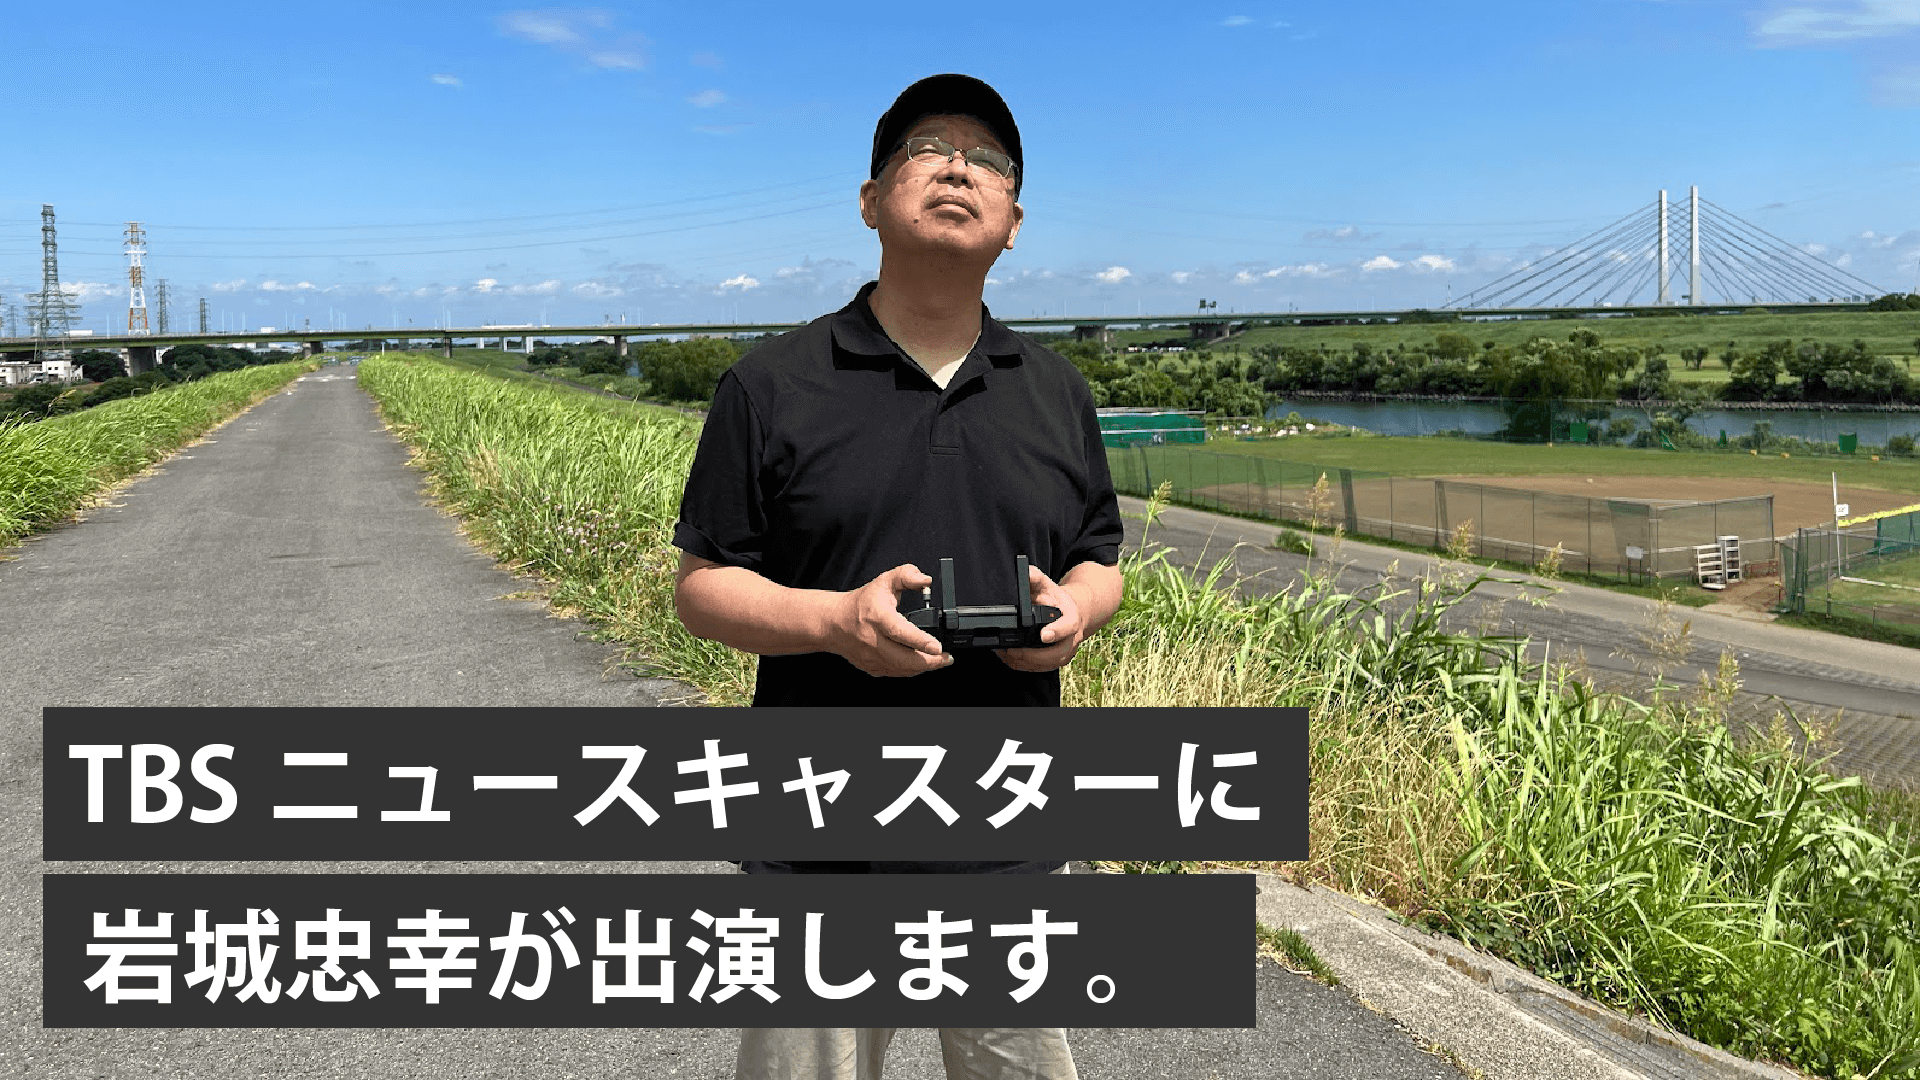 【TBSニュースキャスター出演】ドローン搭載のRTKについてドローン東京の岩城が取材をうけました。